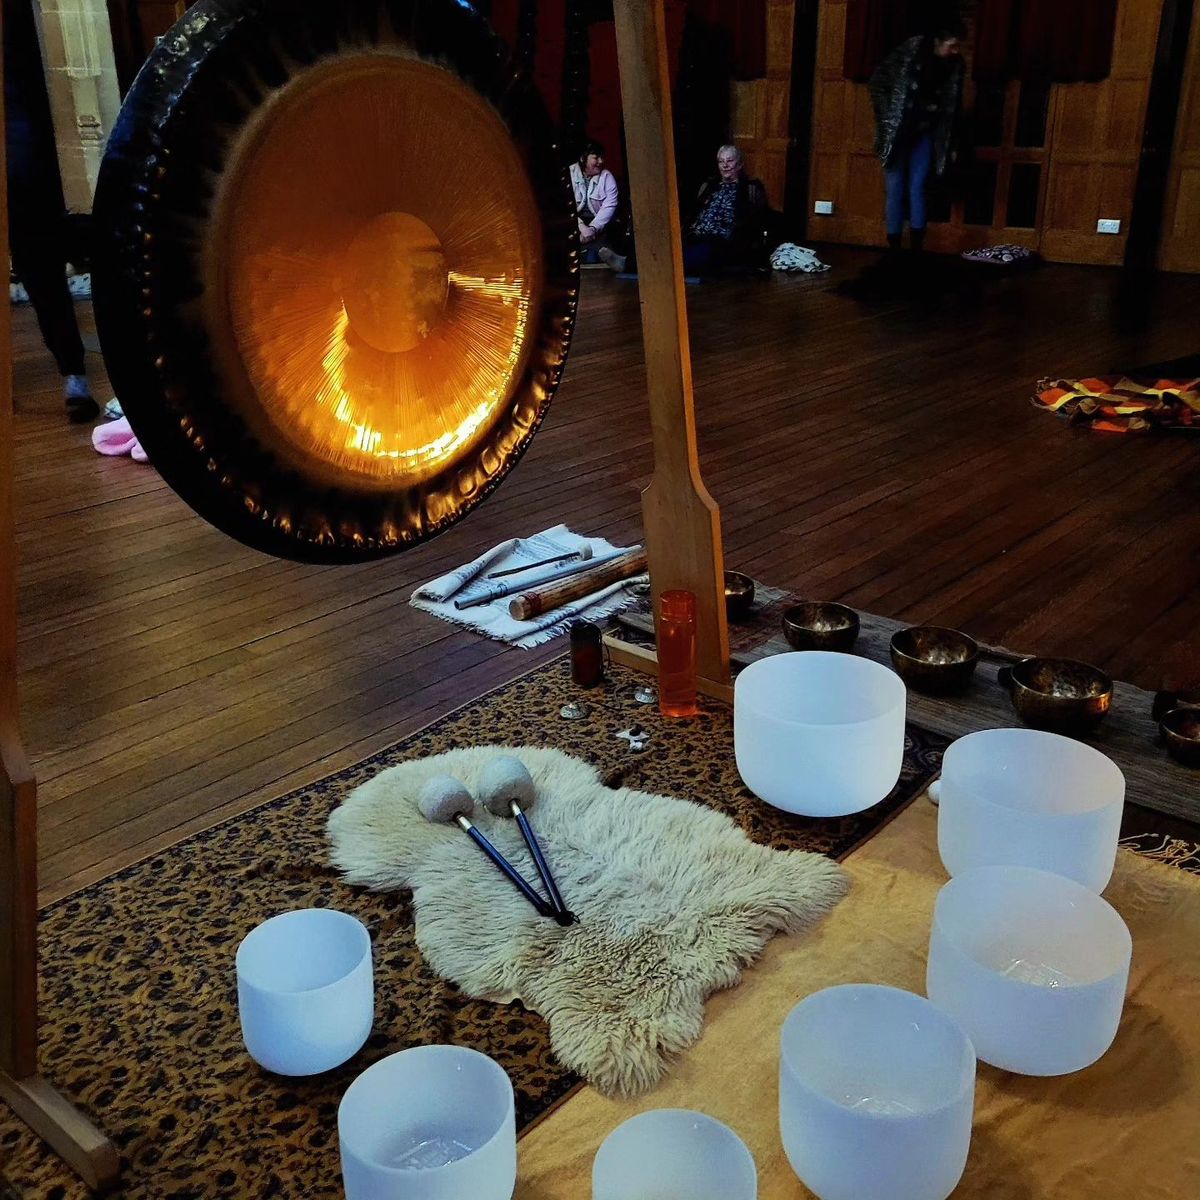 Gong Bath Meditation 